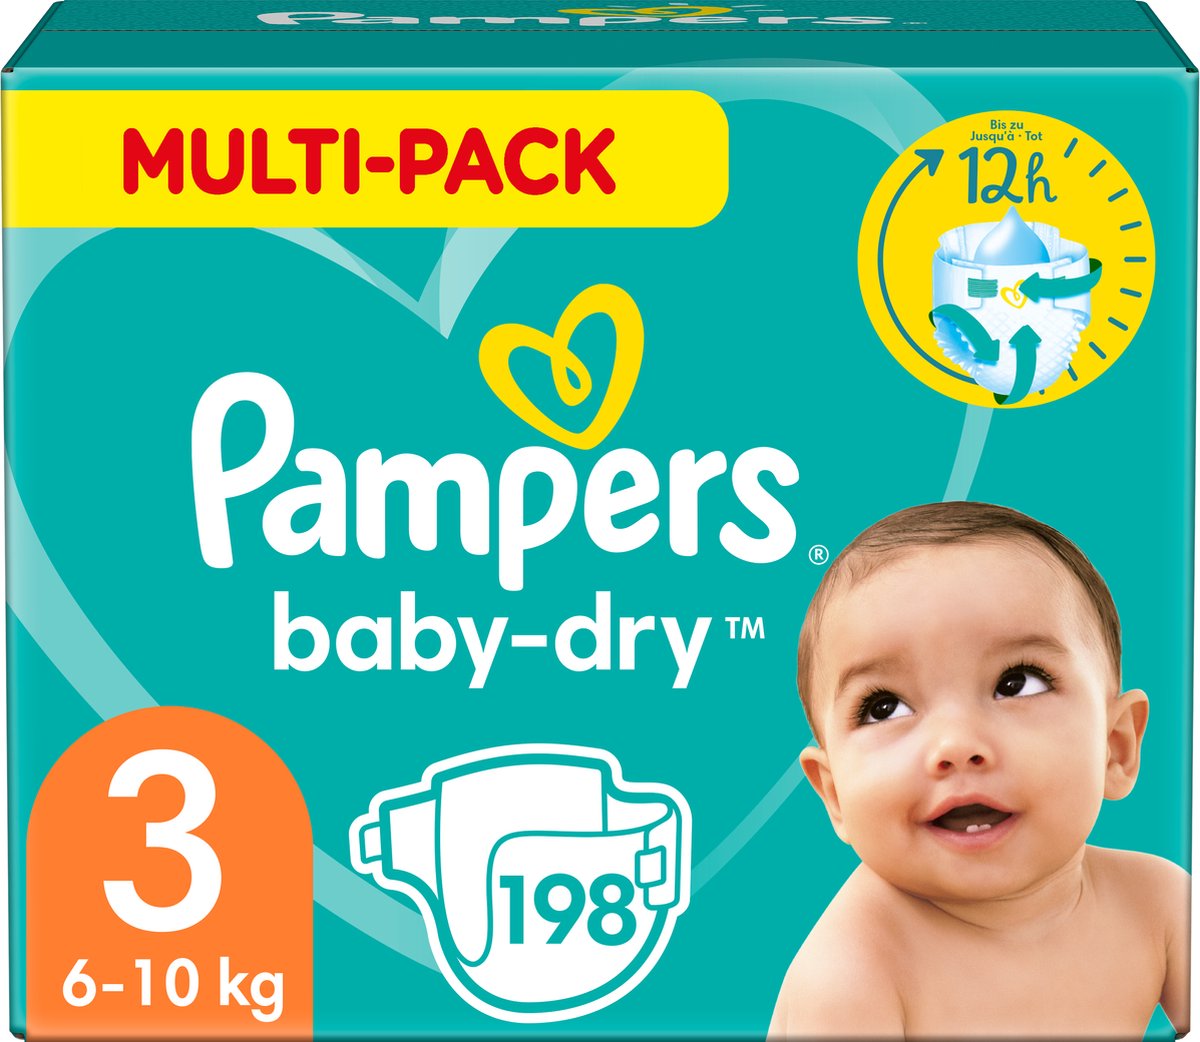 Pampers Baby-Dry Luiers - Maat 3 (6-10 kg) - 198 stuks - Multi-Pack - Pampers